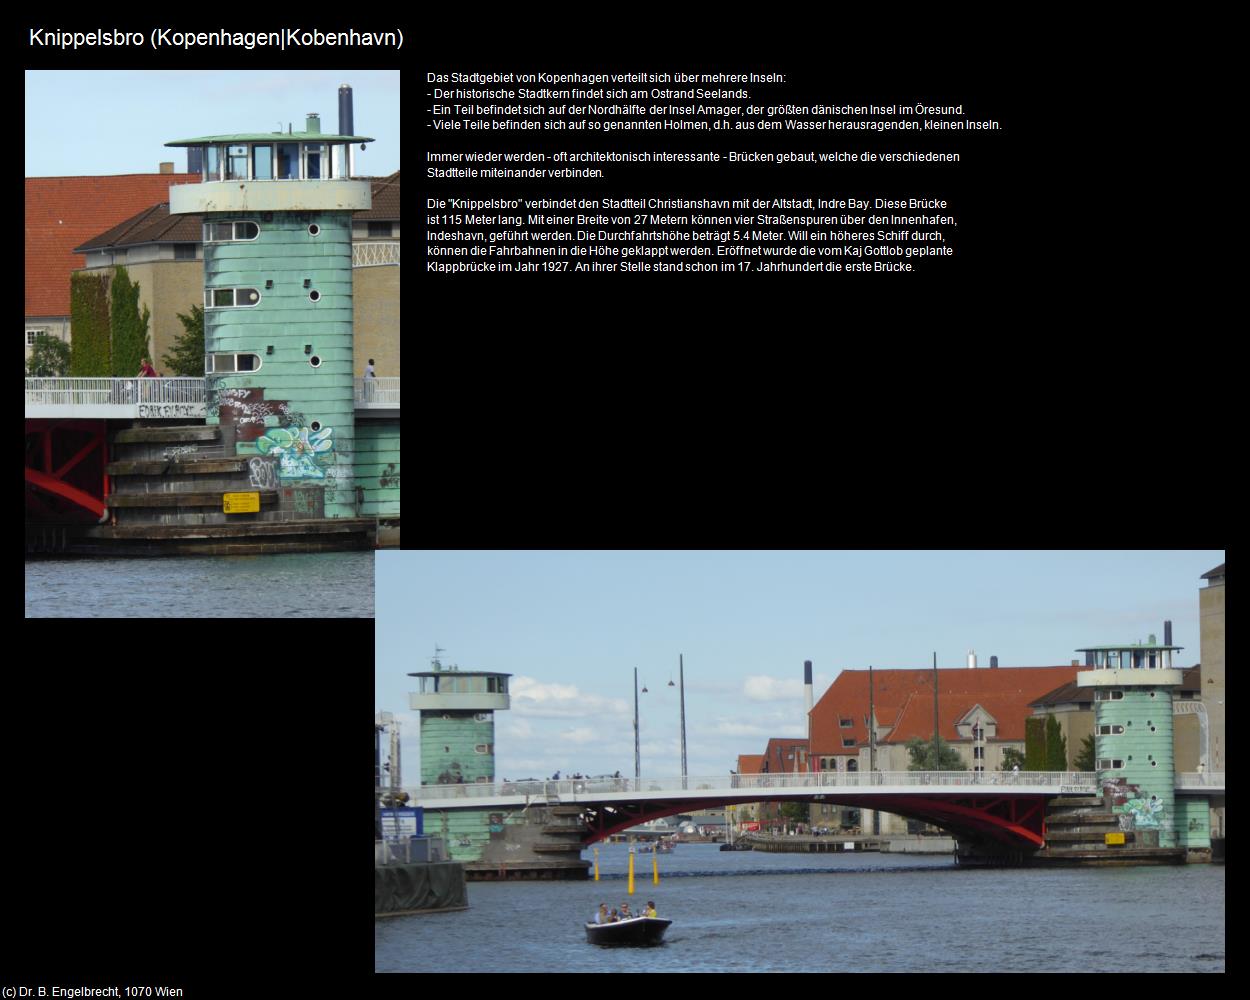 Knippelsbro (Kopenhagen|Köbenhavn) in Kulturatlas-REISE nach NORWEGEN